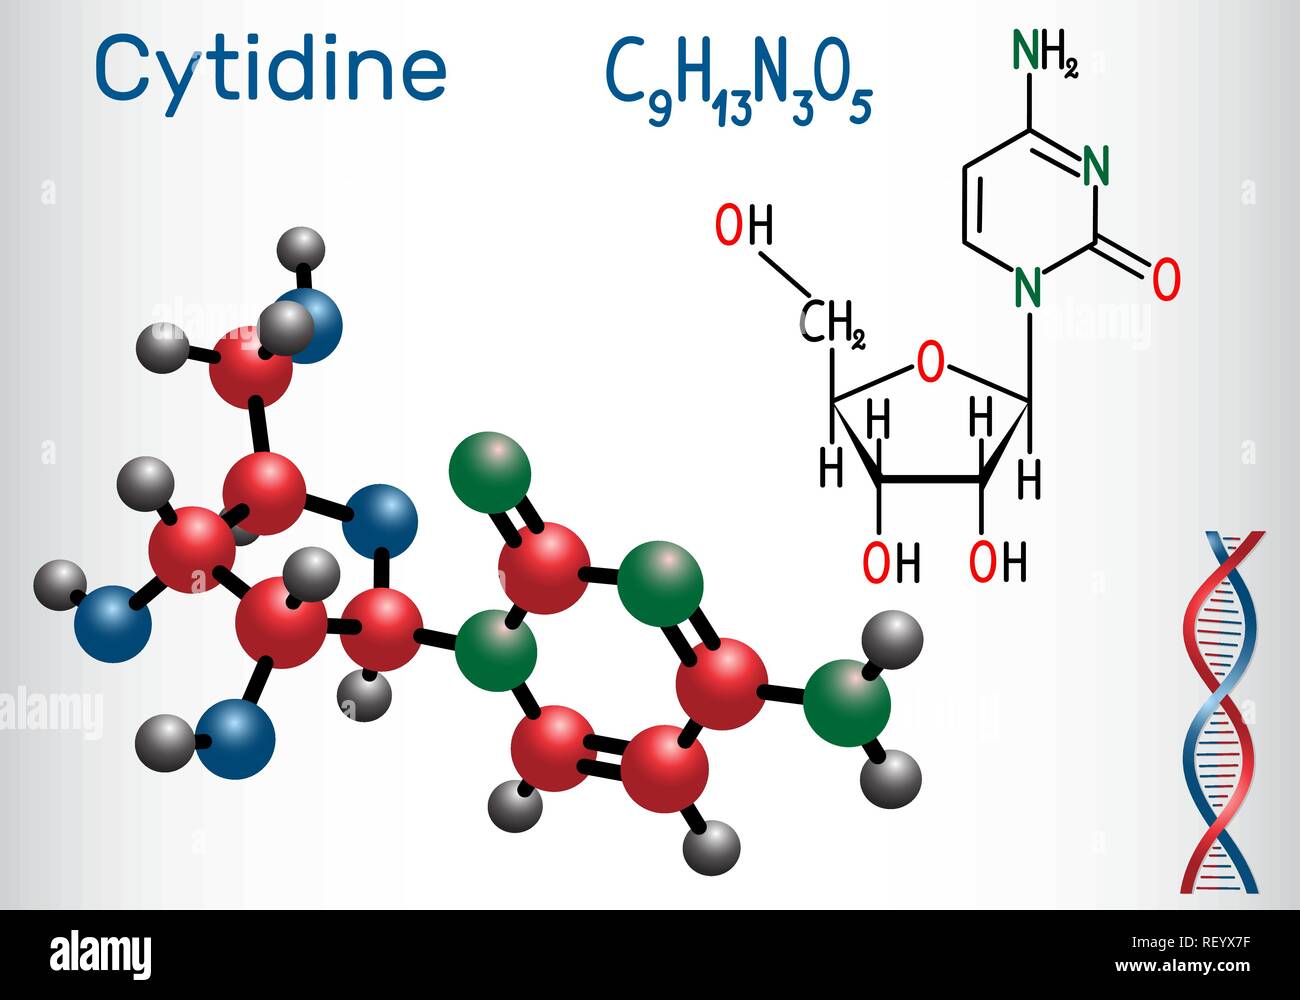 Citidina - pirimidina nucleoside molecola, è parte importante del RNA. Formula chimica di struttura e la molecola modello. Illustrazione Vettoriale Illustrazione Vettoriale